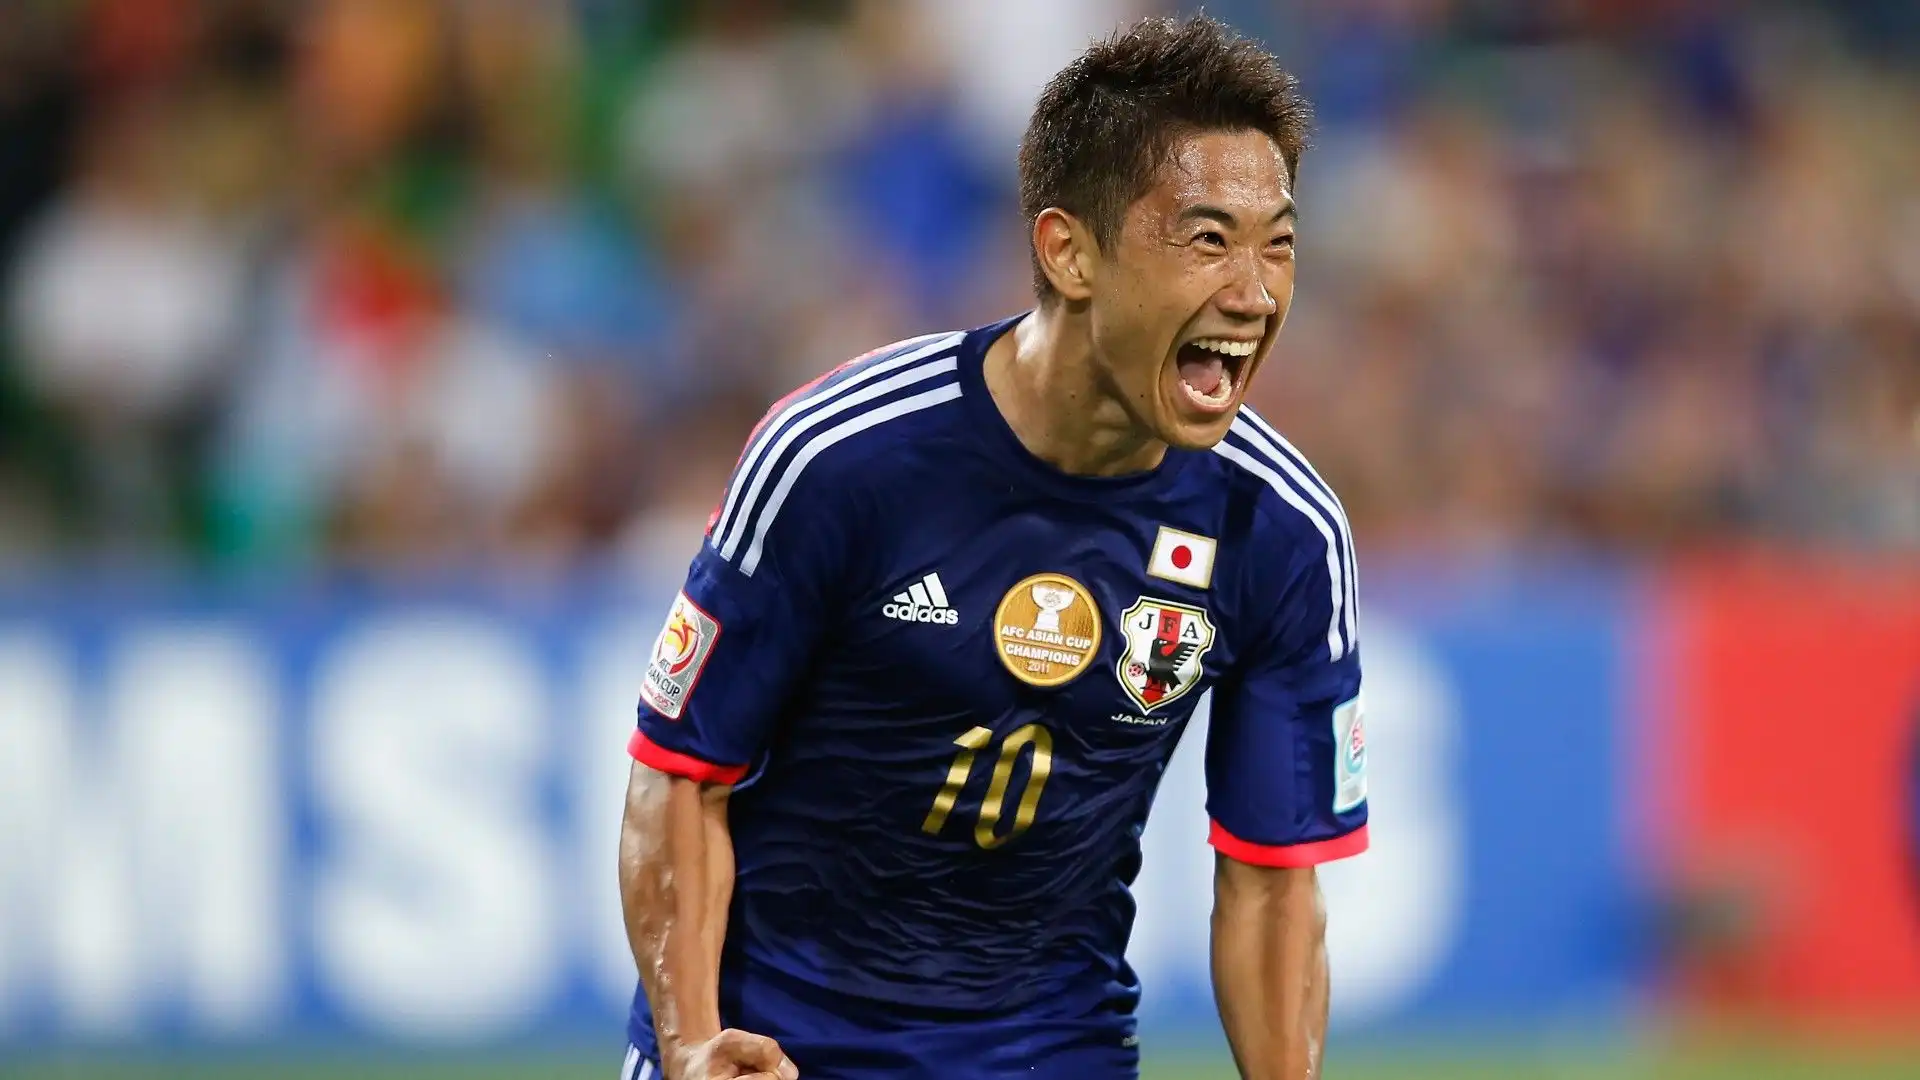 Shinji Kagawa - tra i centrocampisti più forti della storia giapponese. Ha giocato per il Borussia Dortmund e il Manchester United. Nel 2011 ha vinto la Coppa d'Asia